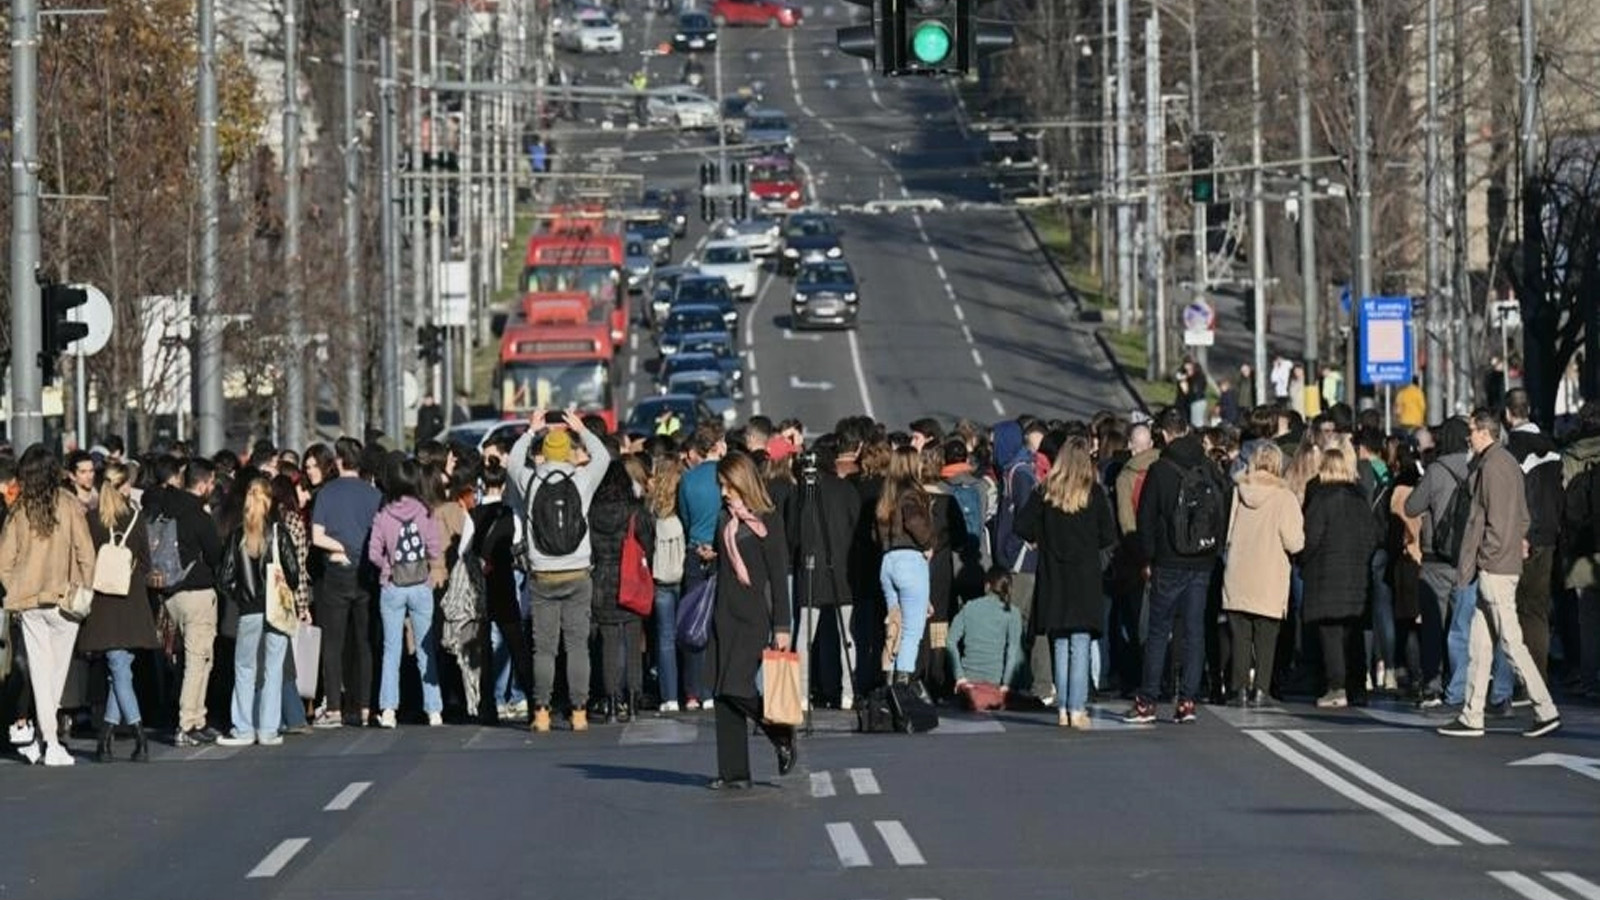 مئات من المتظاهرين يغلقون الشارع في وسط بلغراد حيث تقع وزارة الإدارة العامة